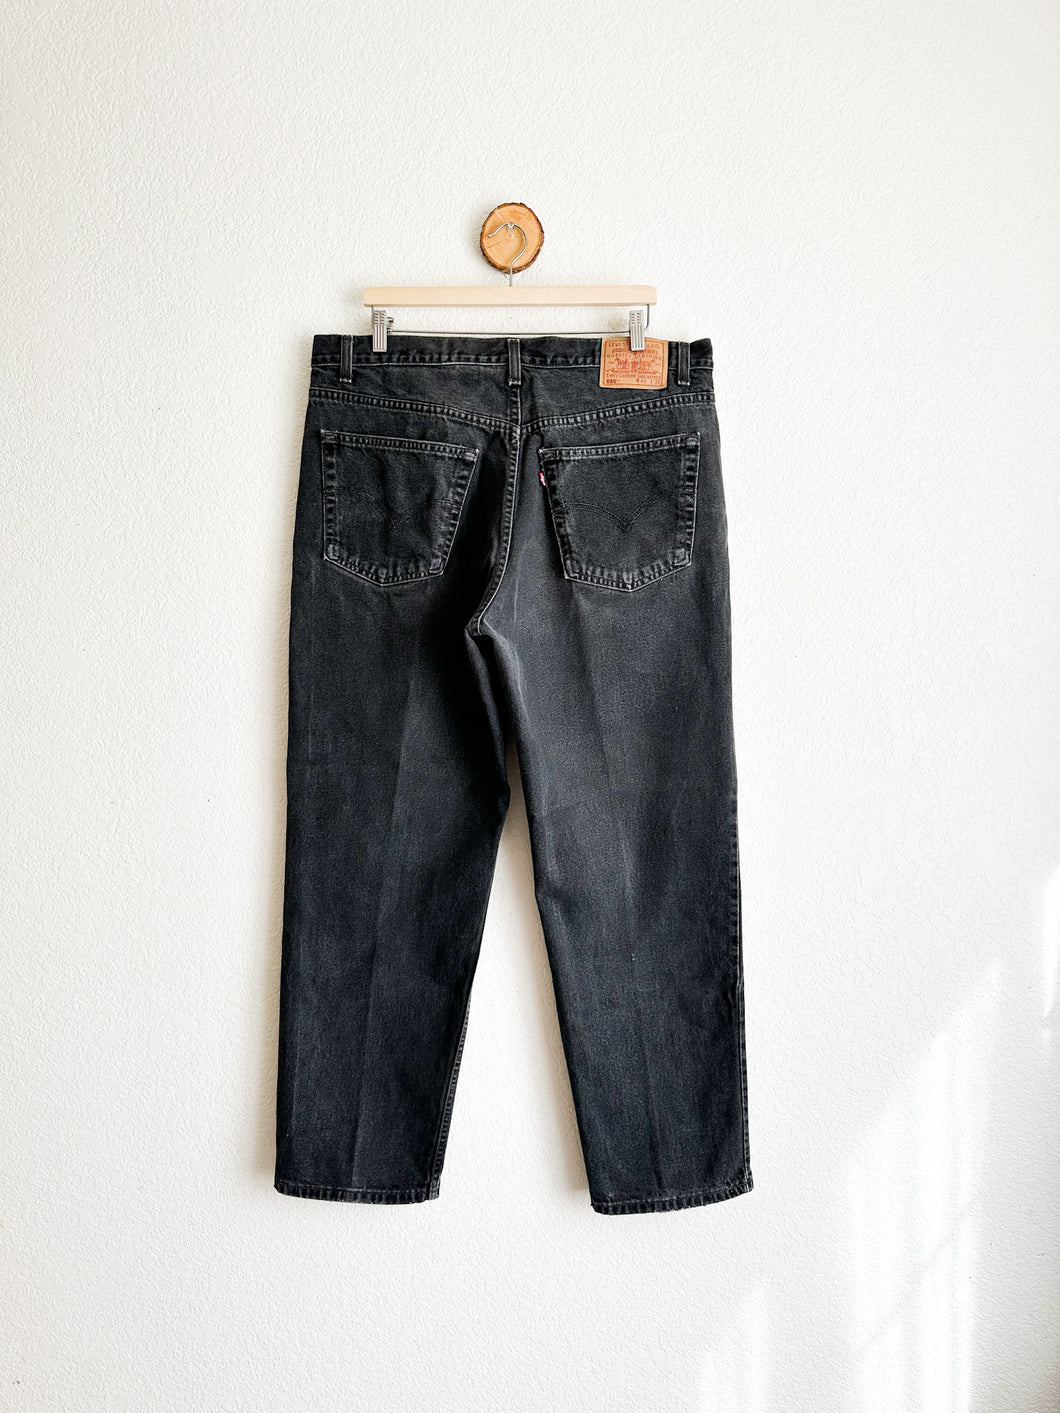 Vintage Levi's 550 Jeans - 39